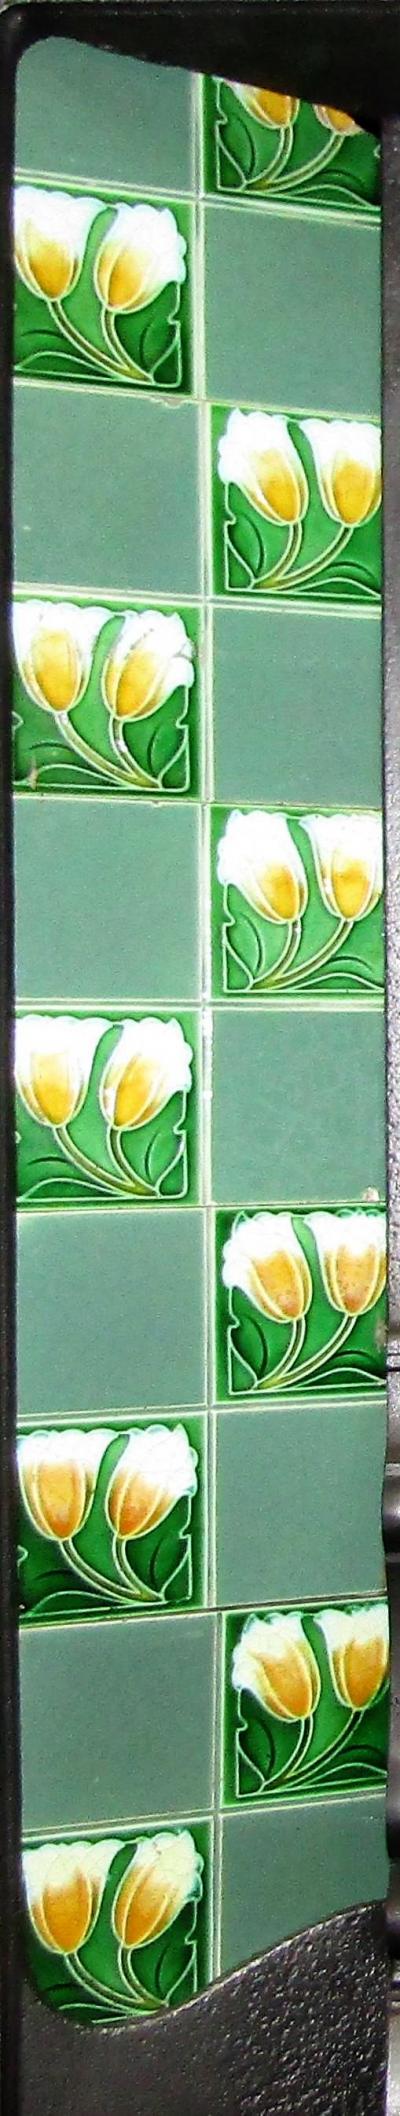 art nouveau fireplace tiles